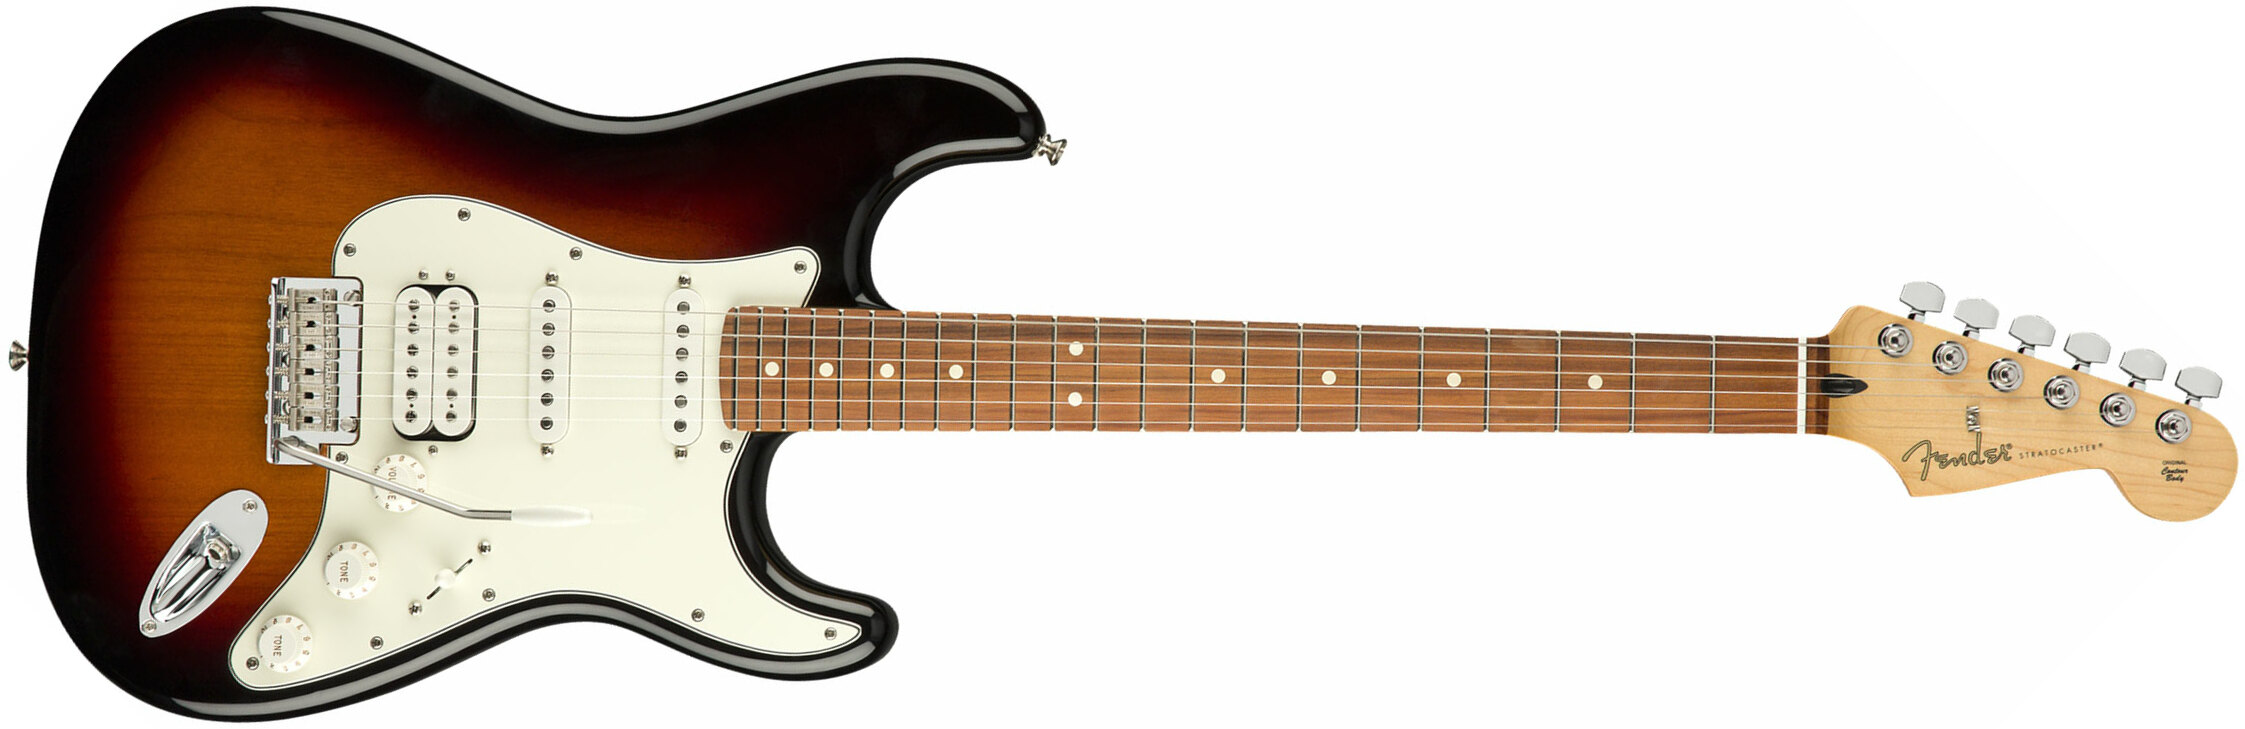 Fender Strat Player Mex Hss Pf - 3-color Sunburst - Guitarra eléctrica con forma de str. - Main picture